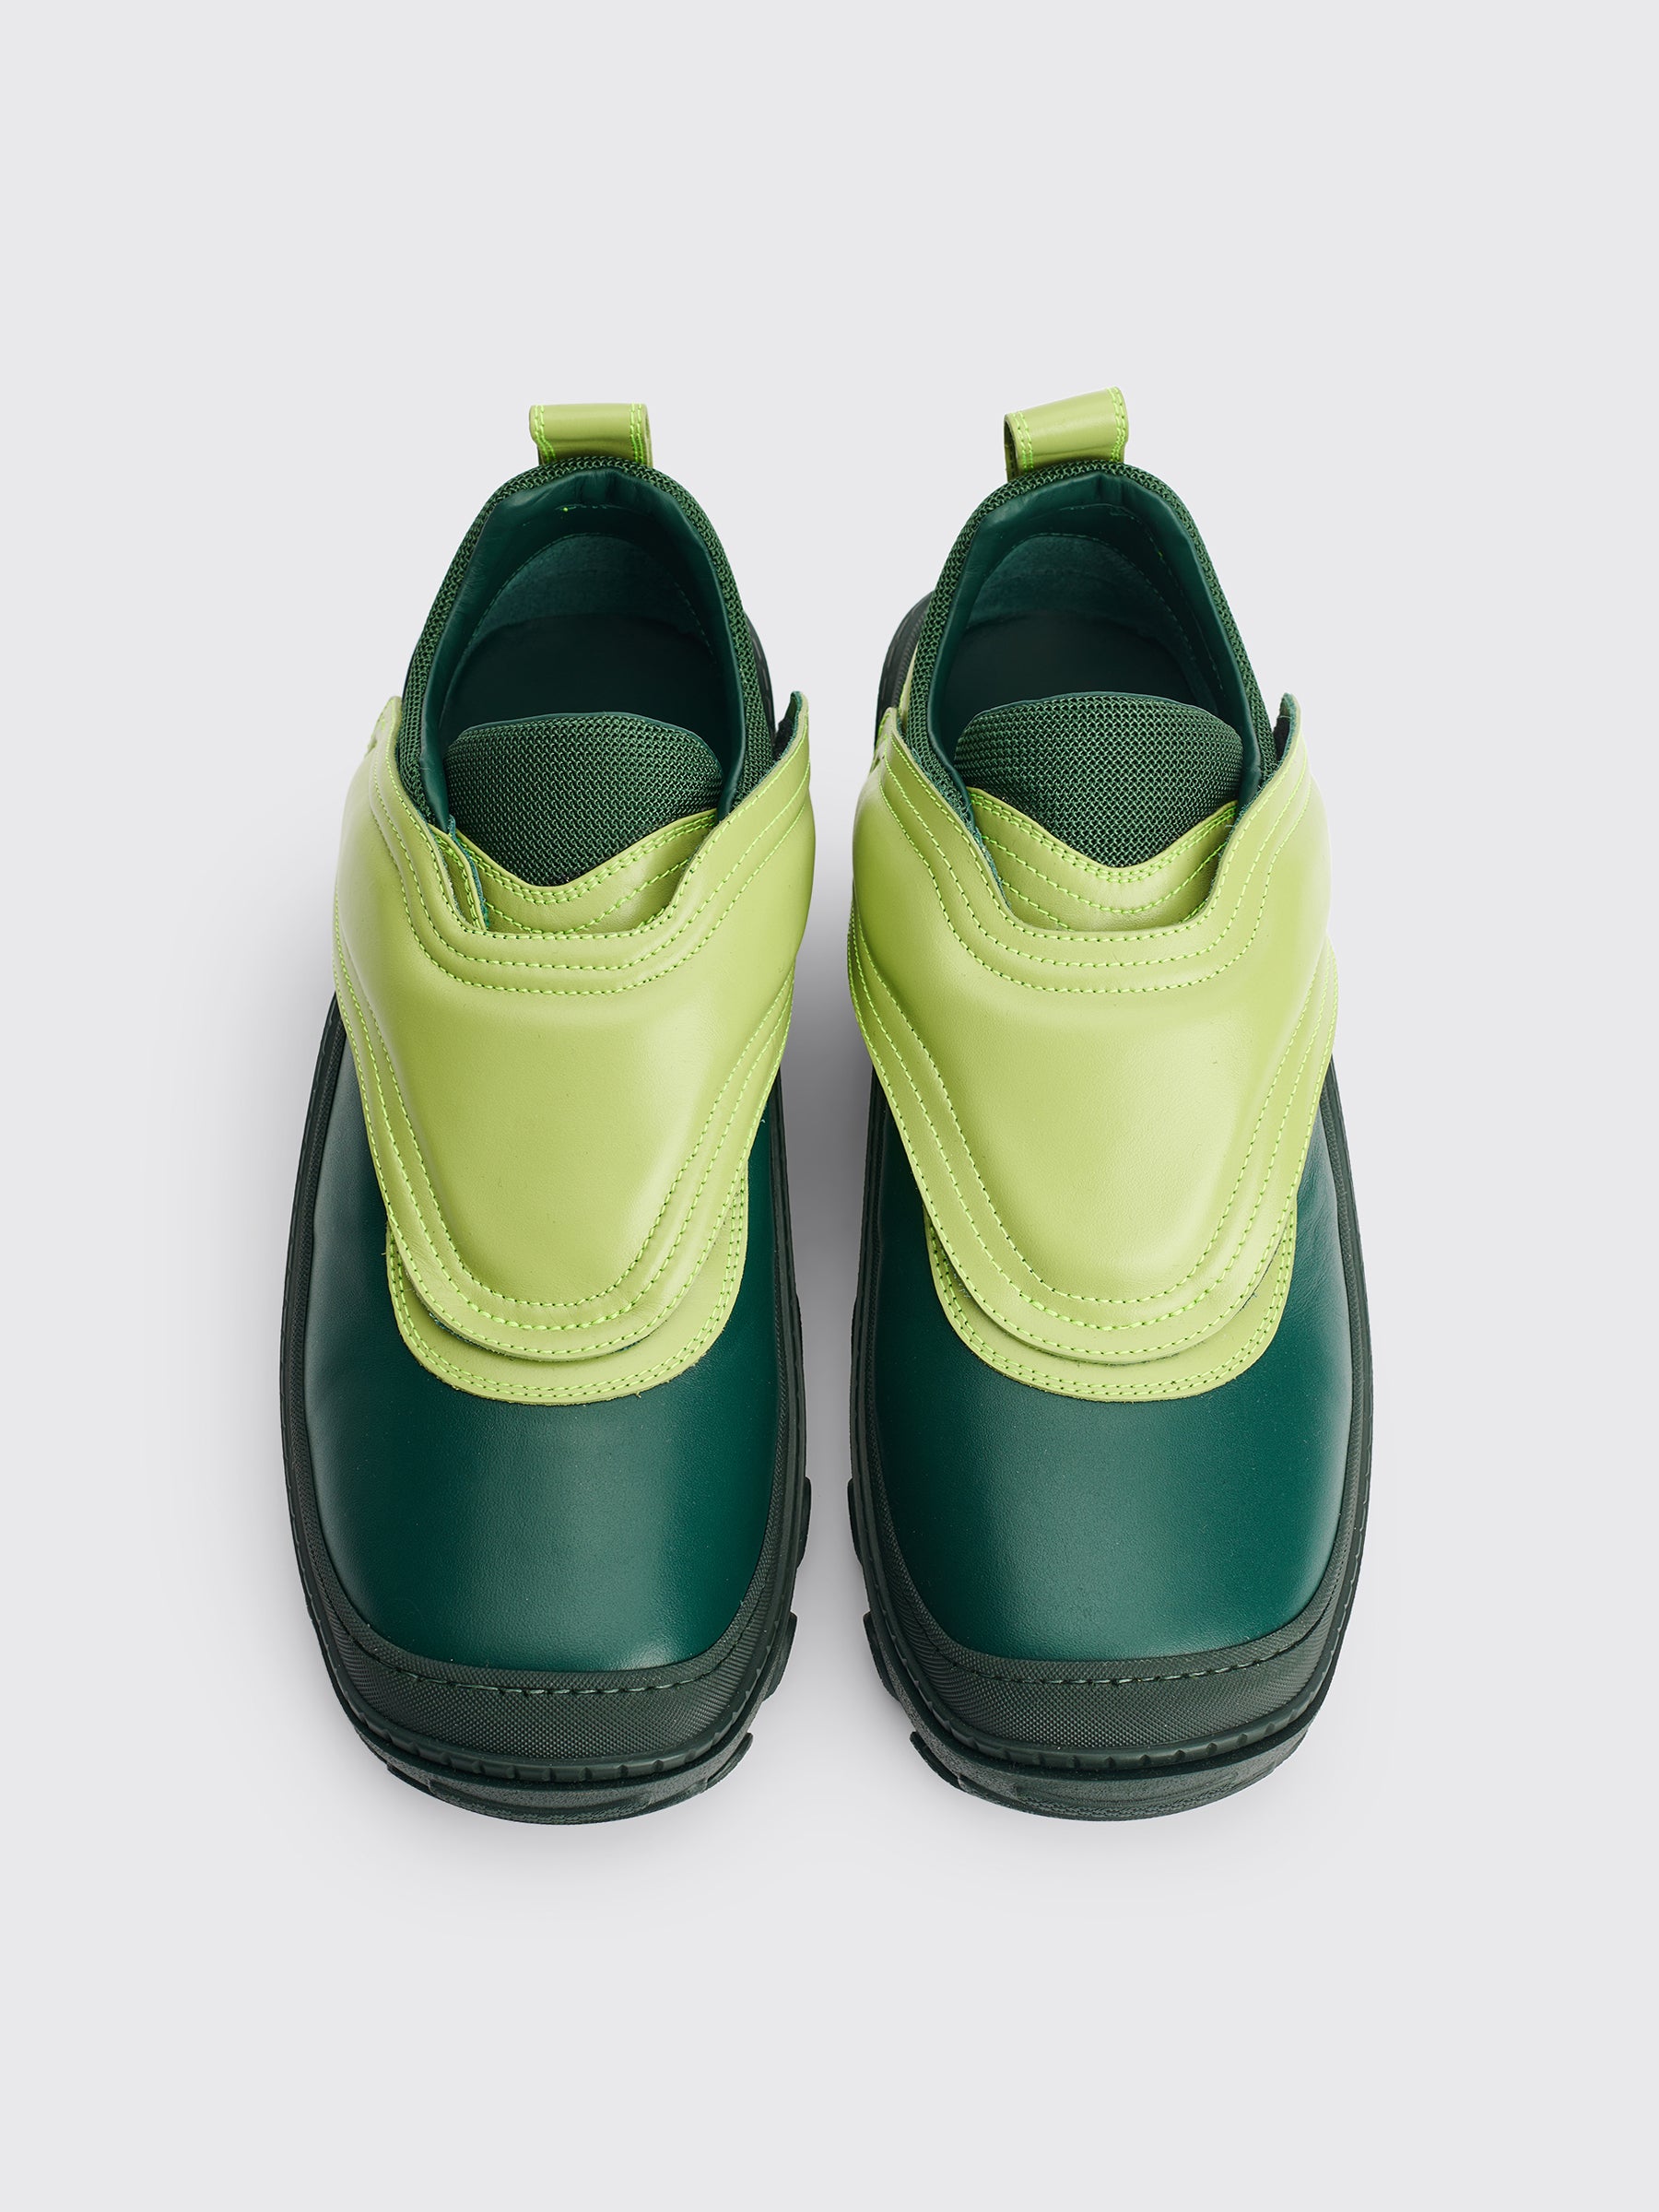 Kiko Kostadinov Tonkin Strap Shoe Leather Lime / Serpentine